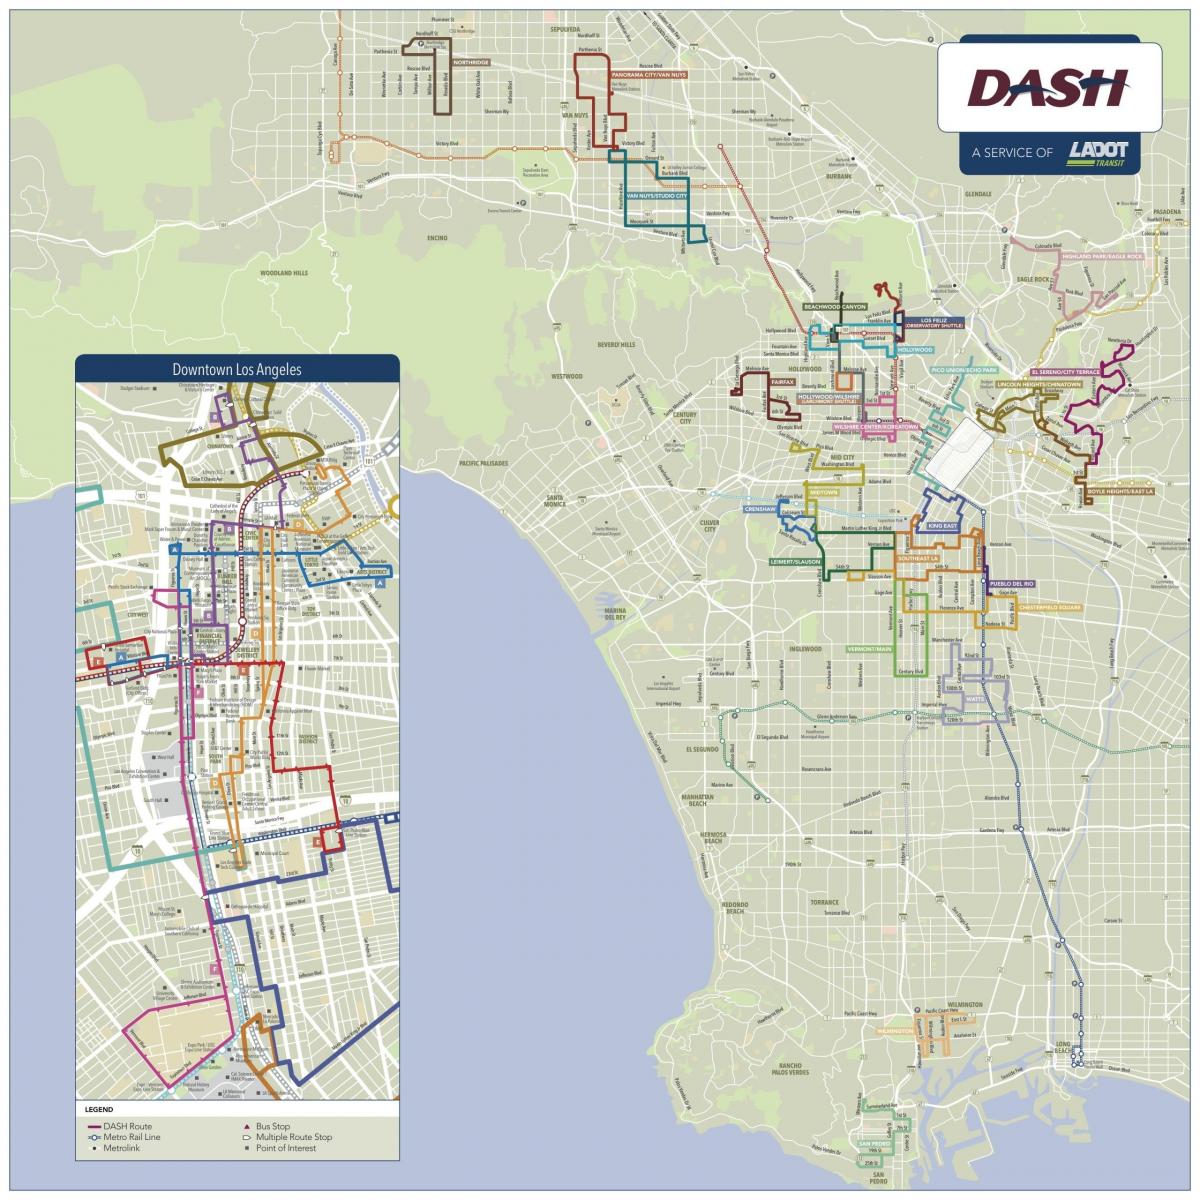 Los Angeles dash mapě